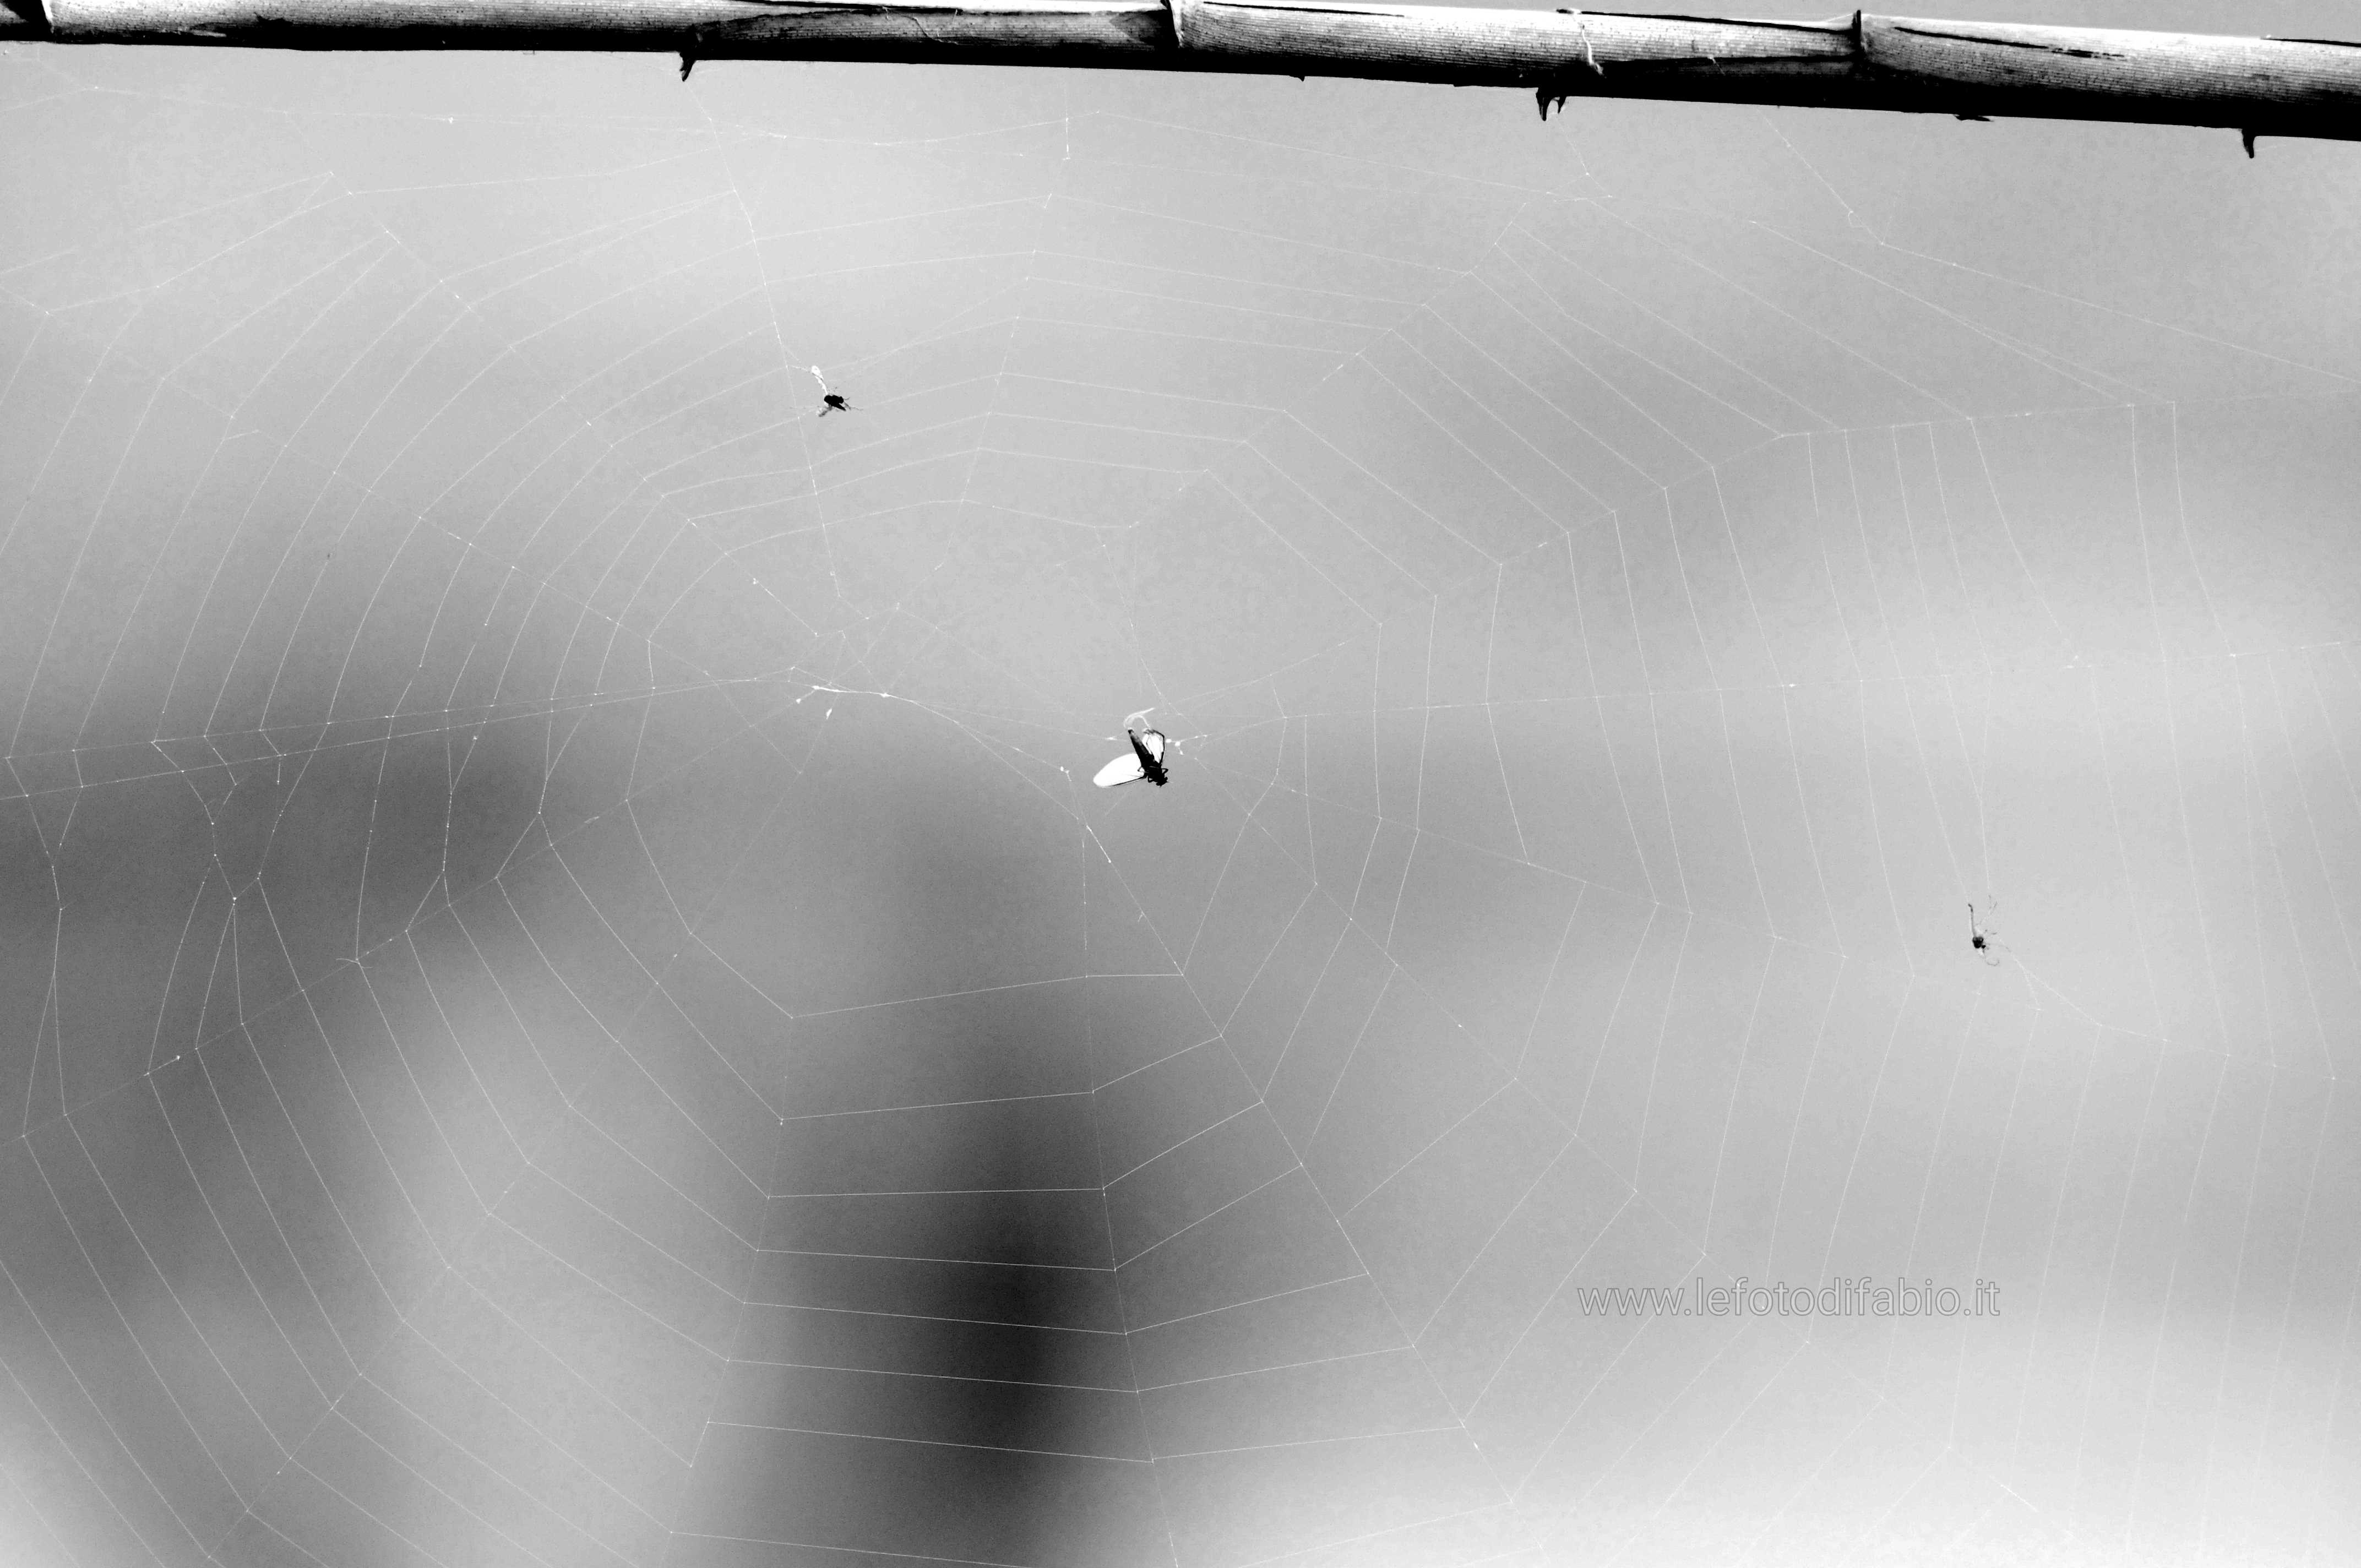 La ragnatela, che sarebbe la più scintillante e graziosa cosa del mondo, se non ci fosse in un angolo il ragno. (André Breton)